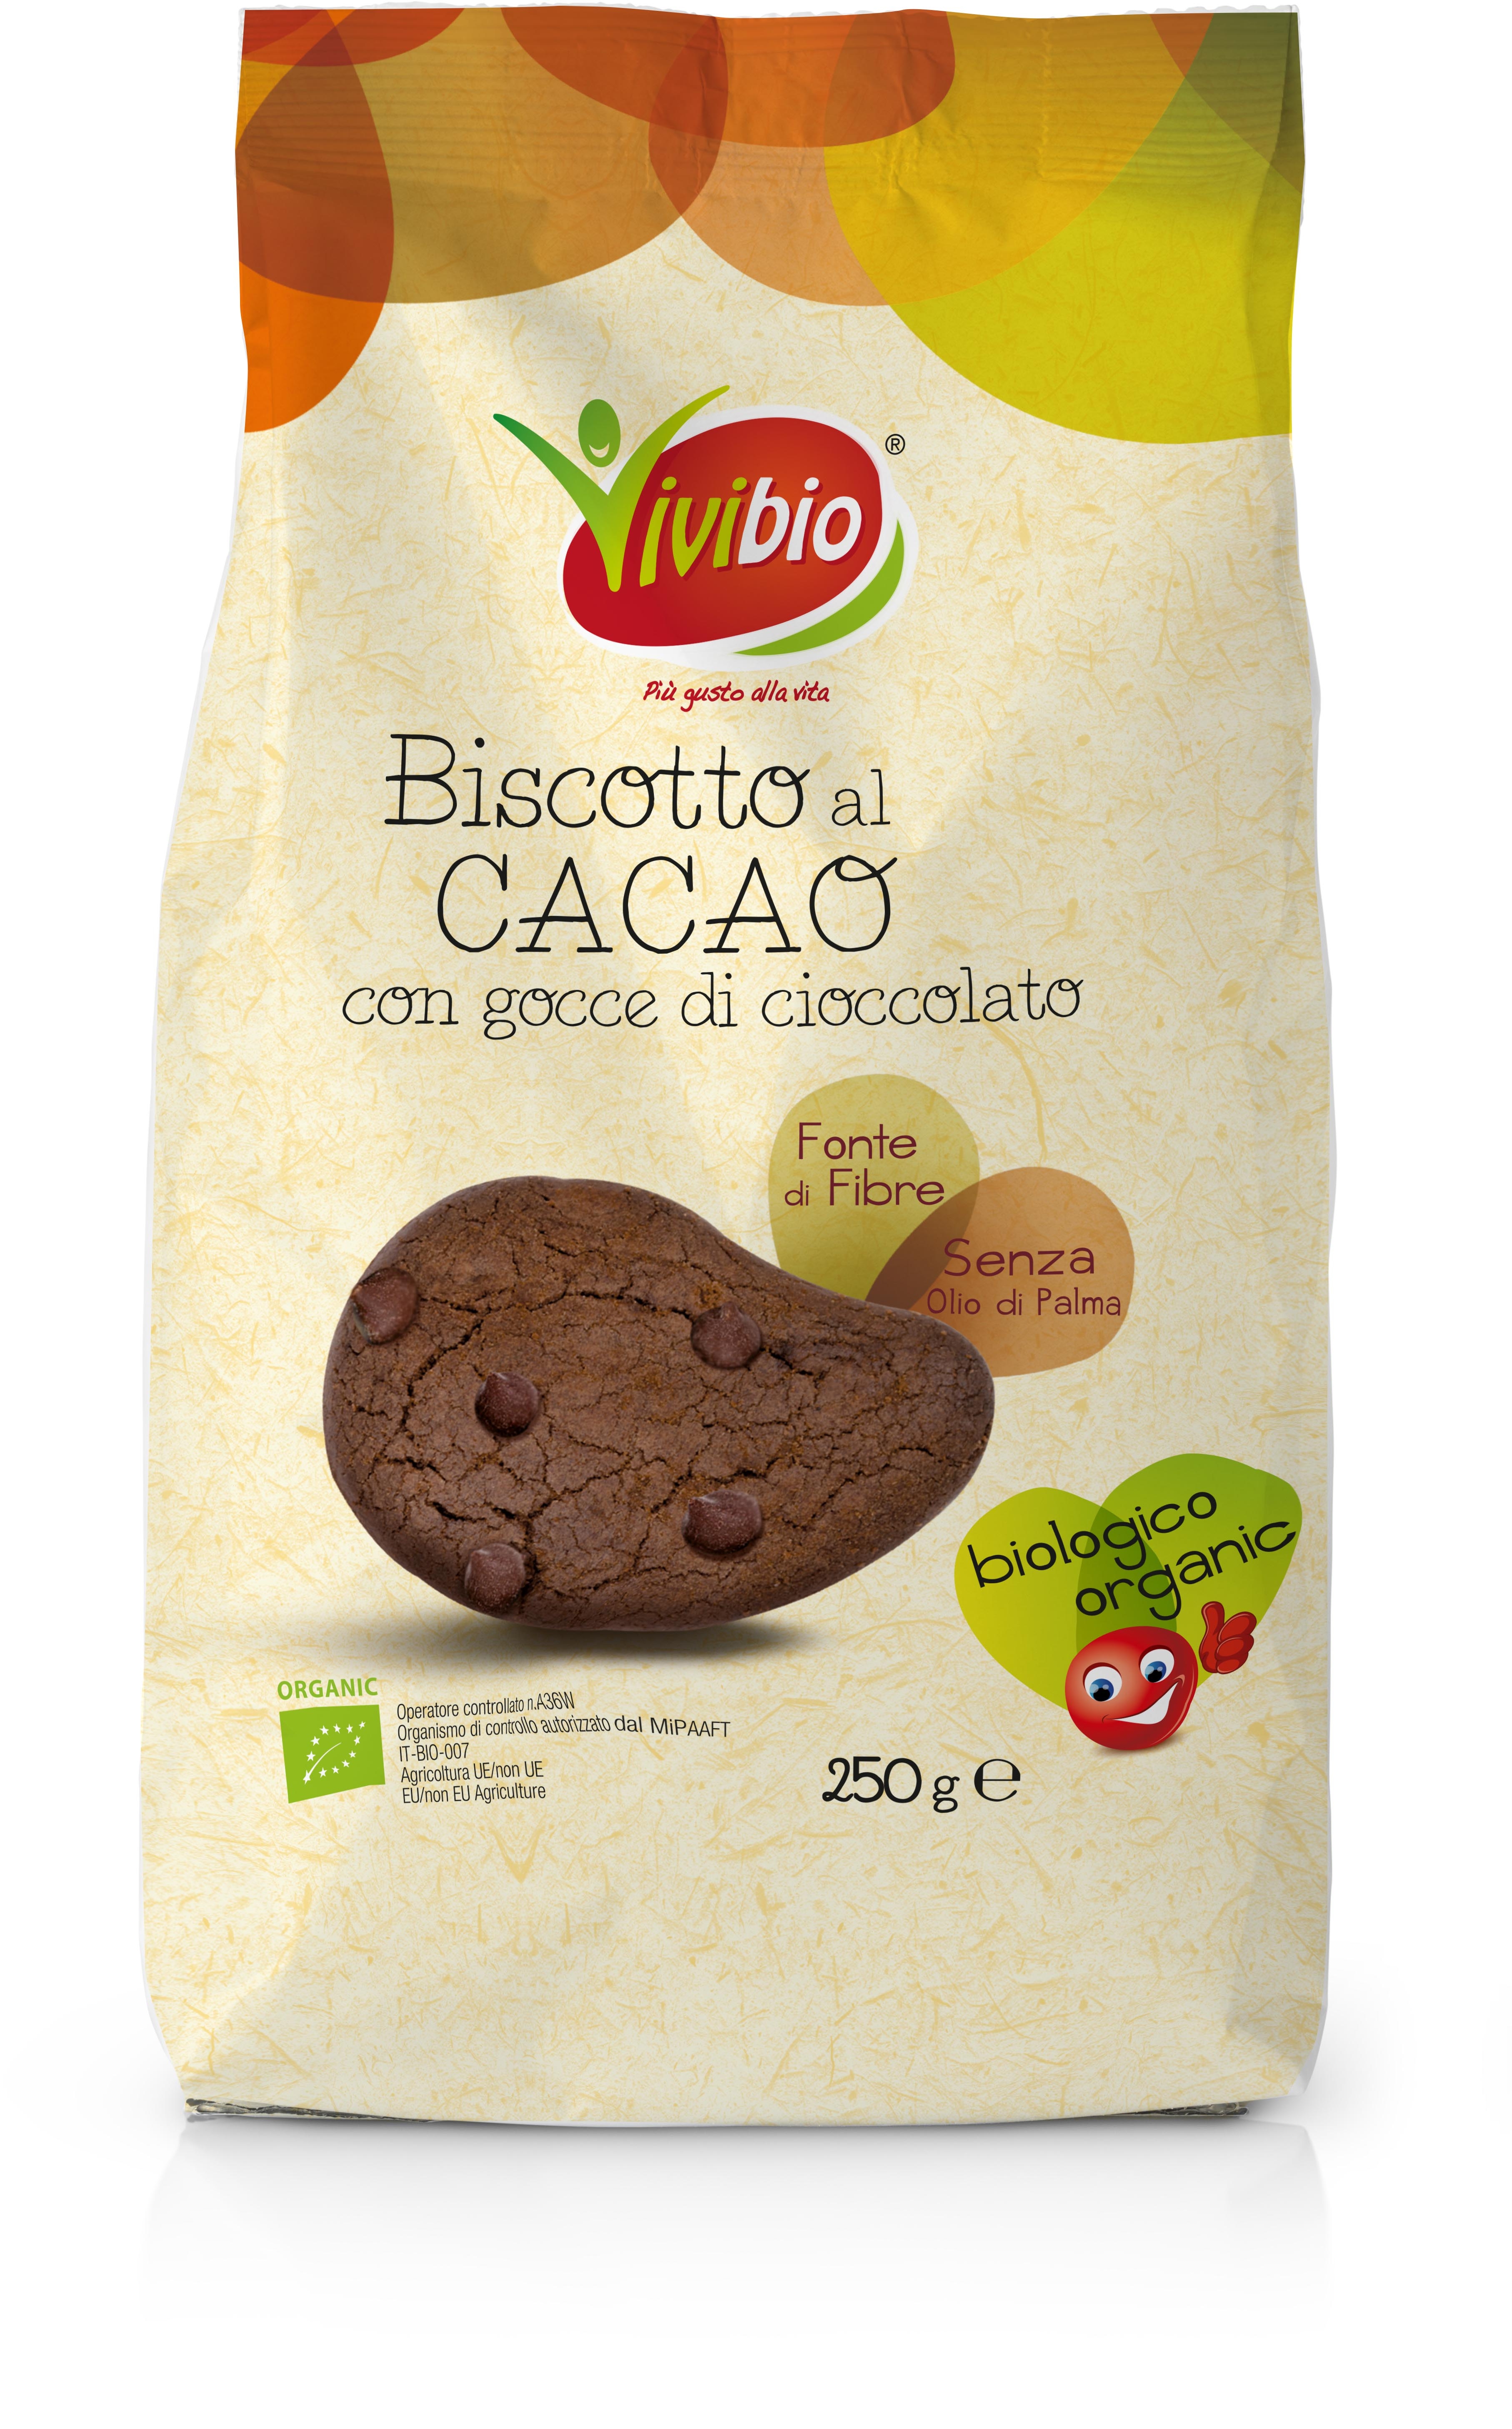 Biscotto al cacao con gocce di cioccolato Vivibio